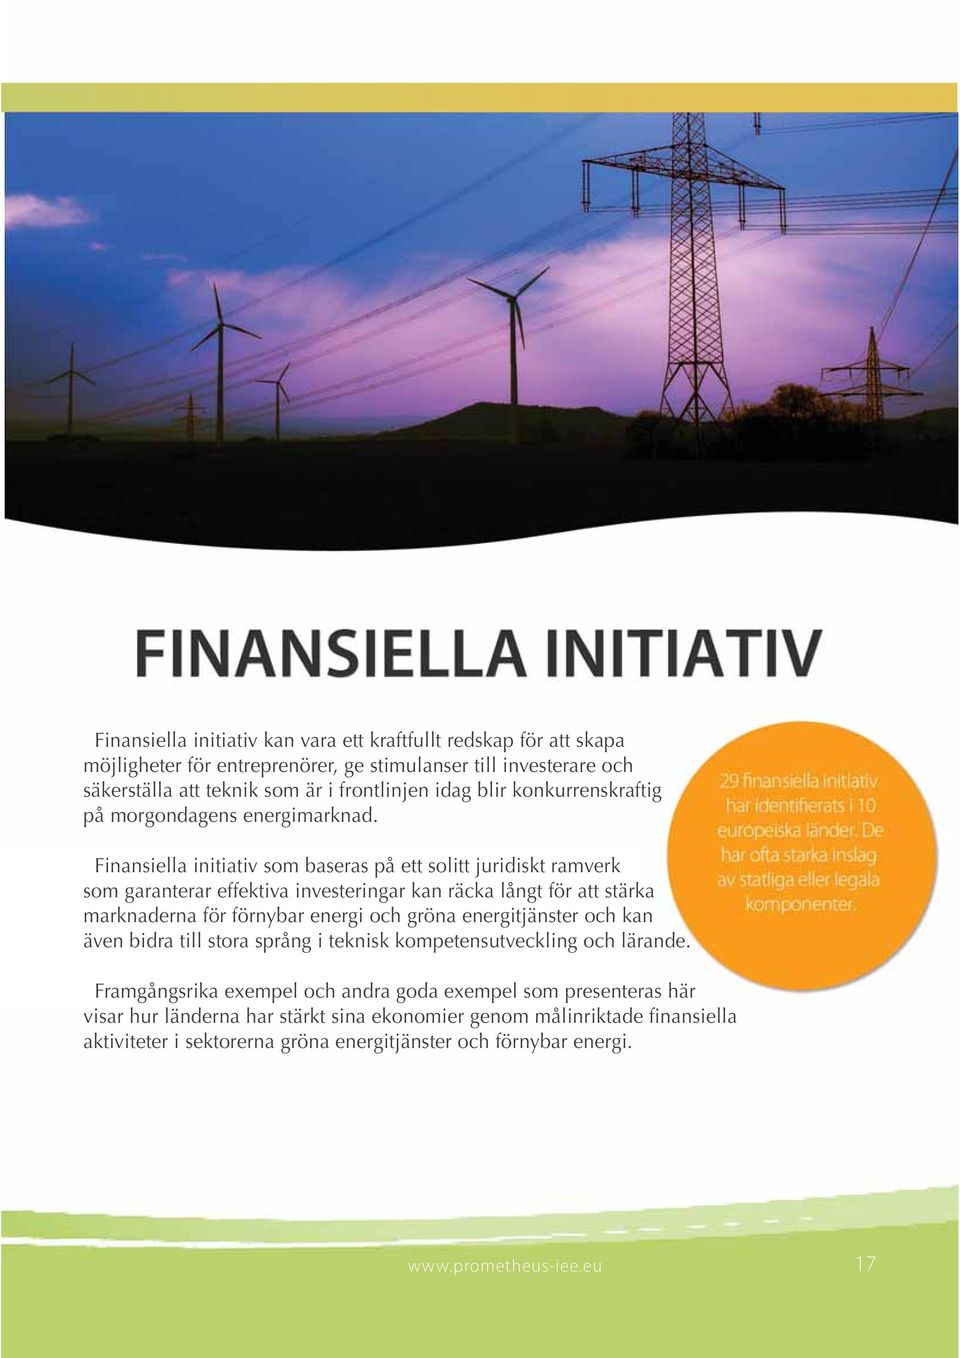 Finansiella initiativ som baseras på ett solitt juridiskt ramverk som garanterar effektiva investeringar kan räcka långt för att stärka marknaderna för förnybar energi och gröna